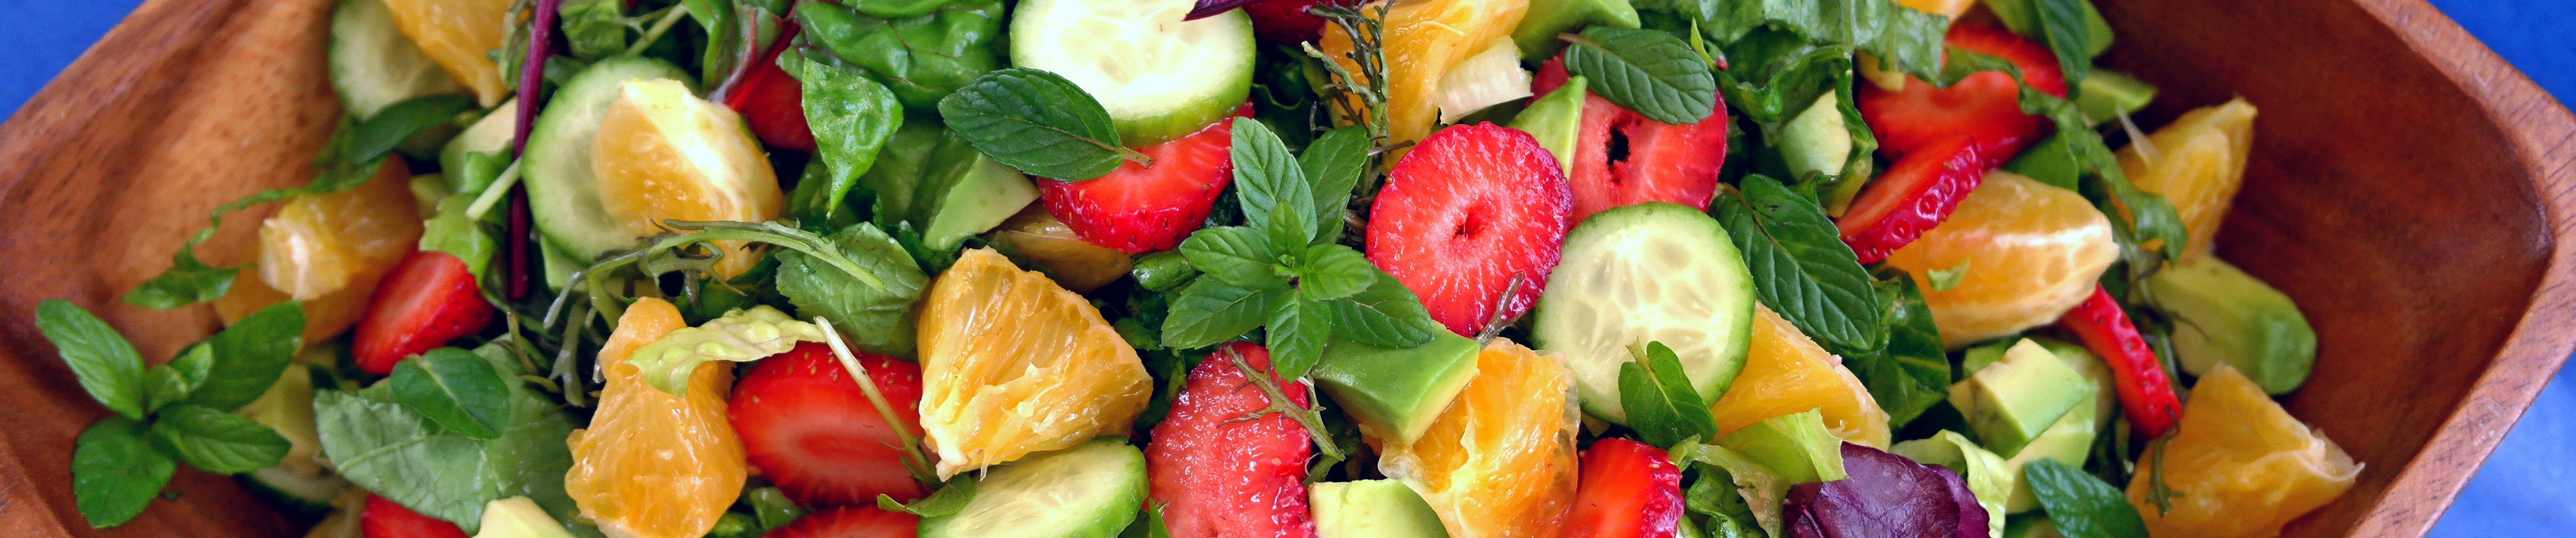 הפרכת מיתוסים – האם שילוב של פירות עם מזון שומני באותה ארוחה מעלה את רמת הסוכר בדם וגורם לקנדידה וסוכרת?